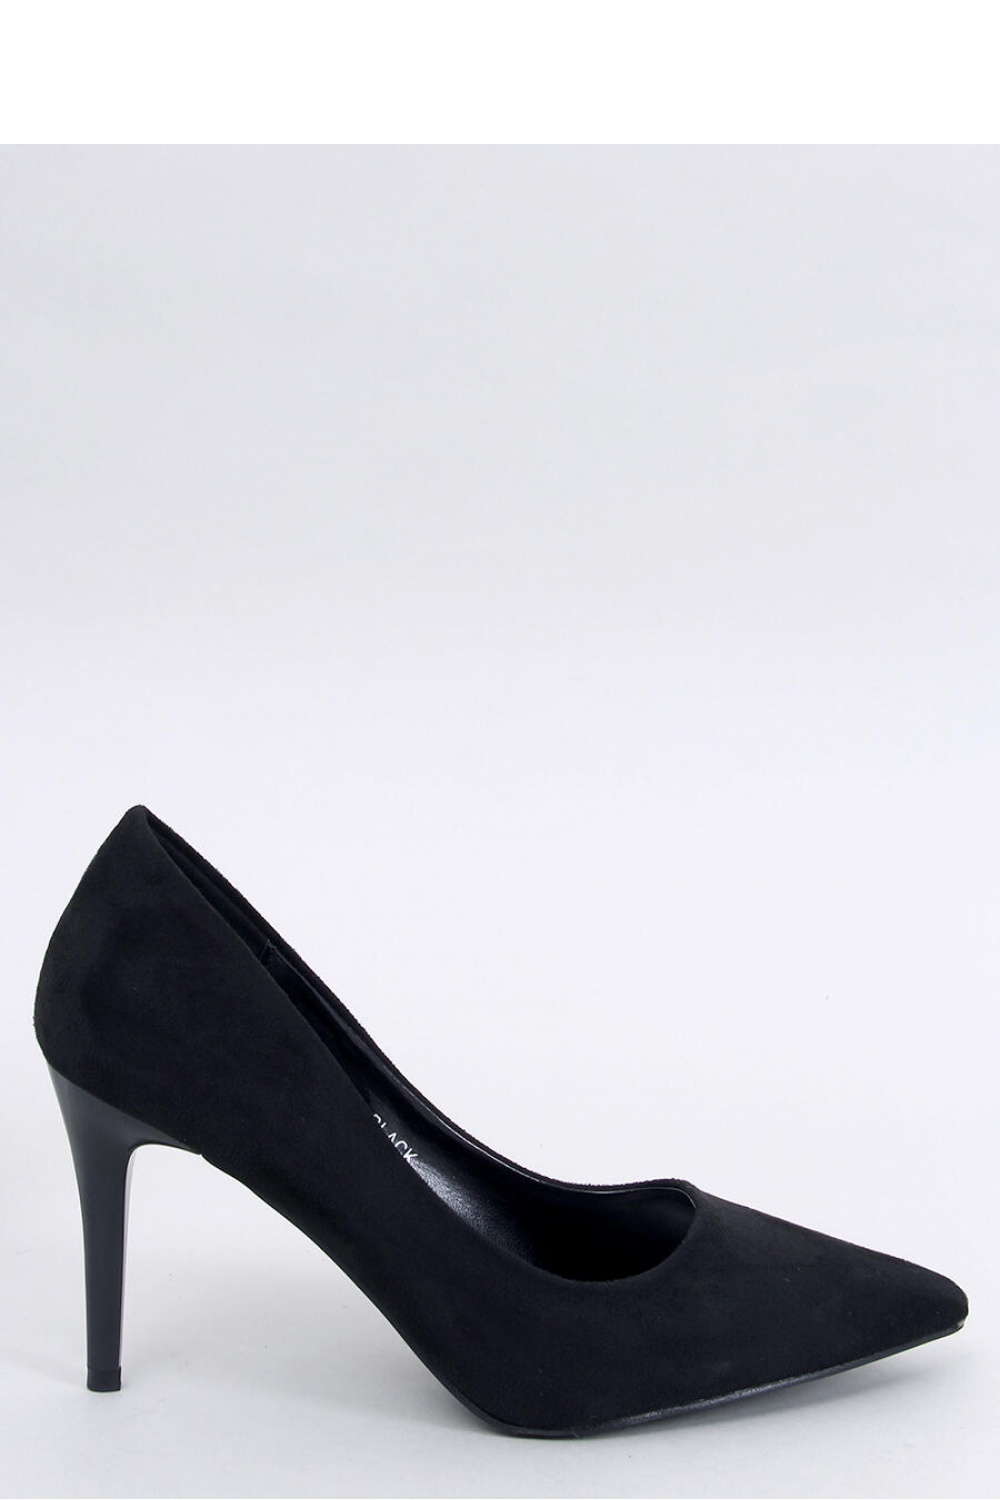 High heels model 193292 Inello